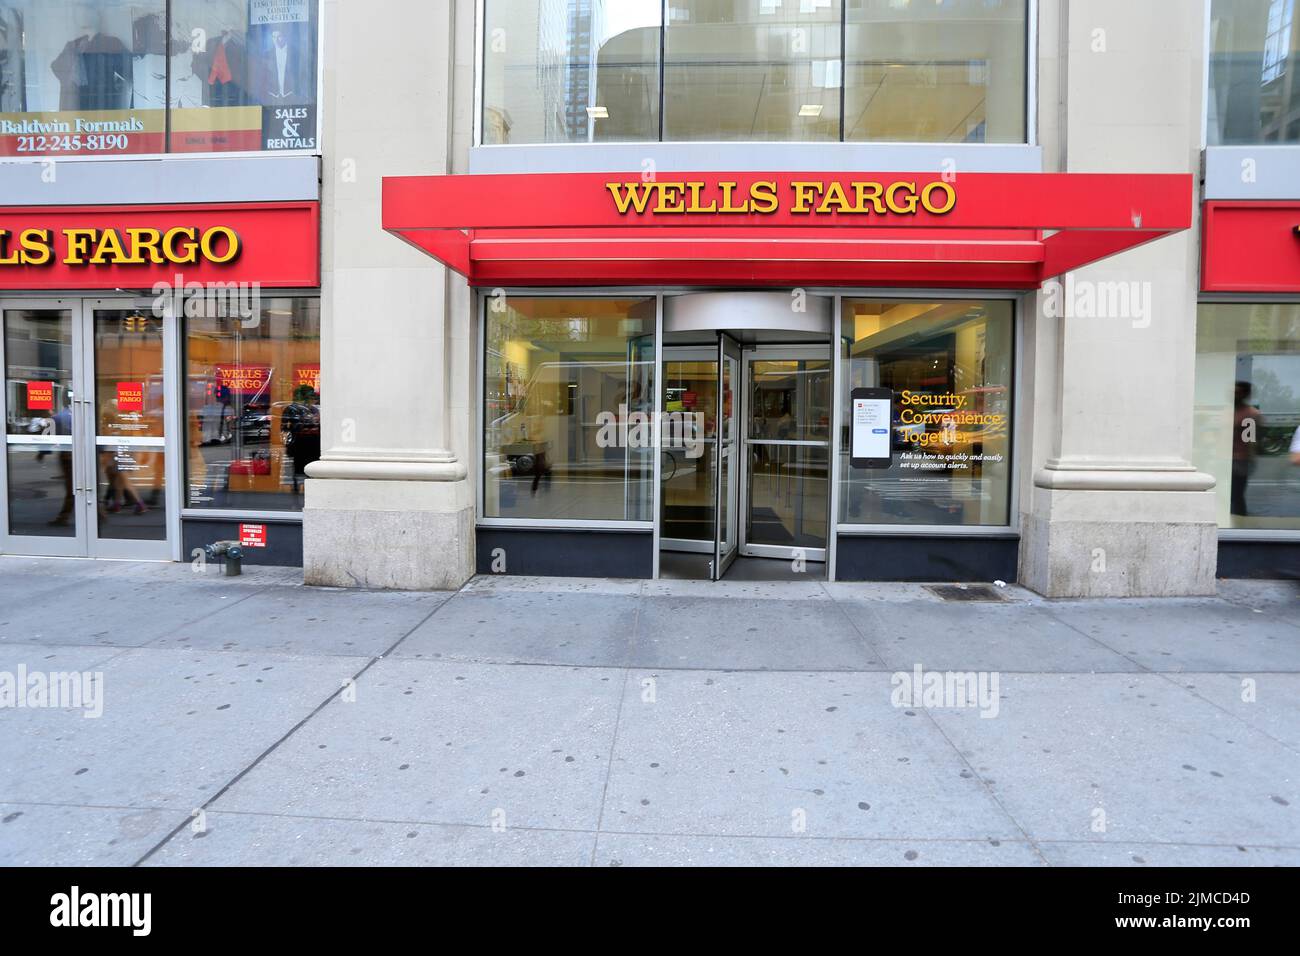 Wells Fargo ist ein US-amerikanisches Finanzdienstleistungsunternehmen mit Sitz in San Francisco. Die Wurzeln der Firma reichen bis in das Jahr 1852 z Stock Photo